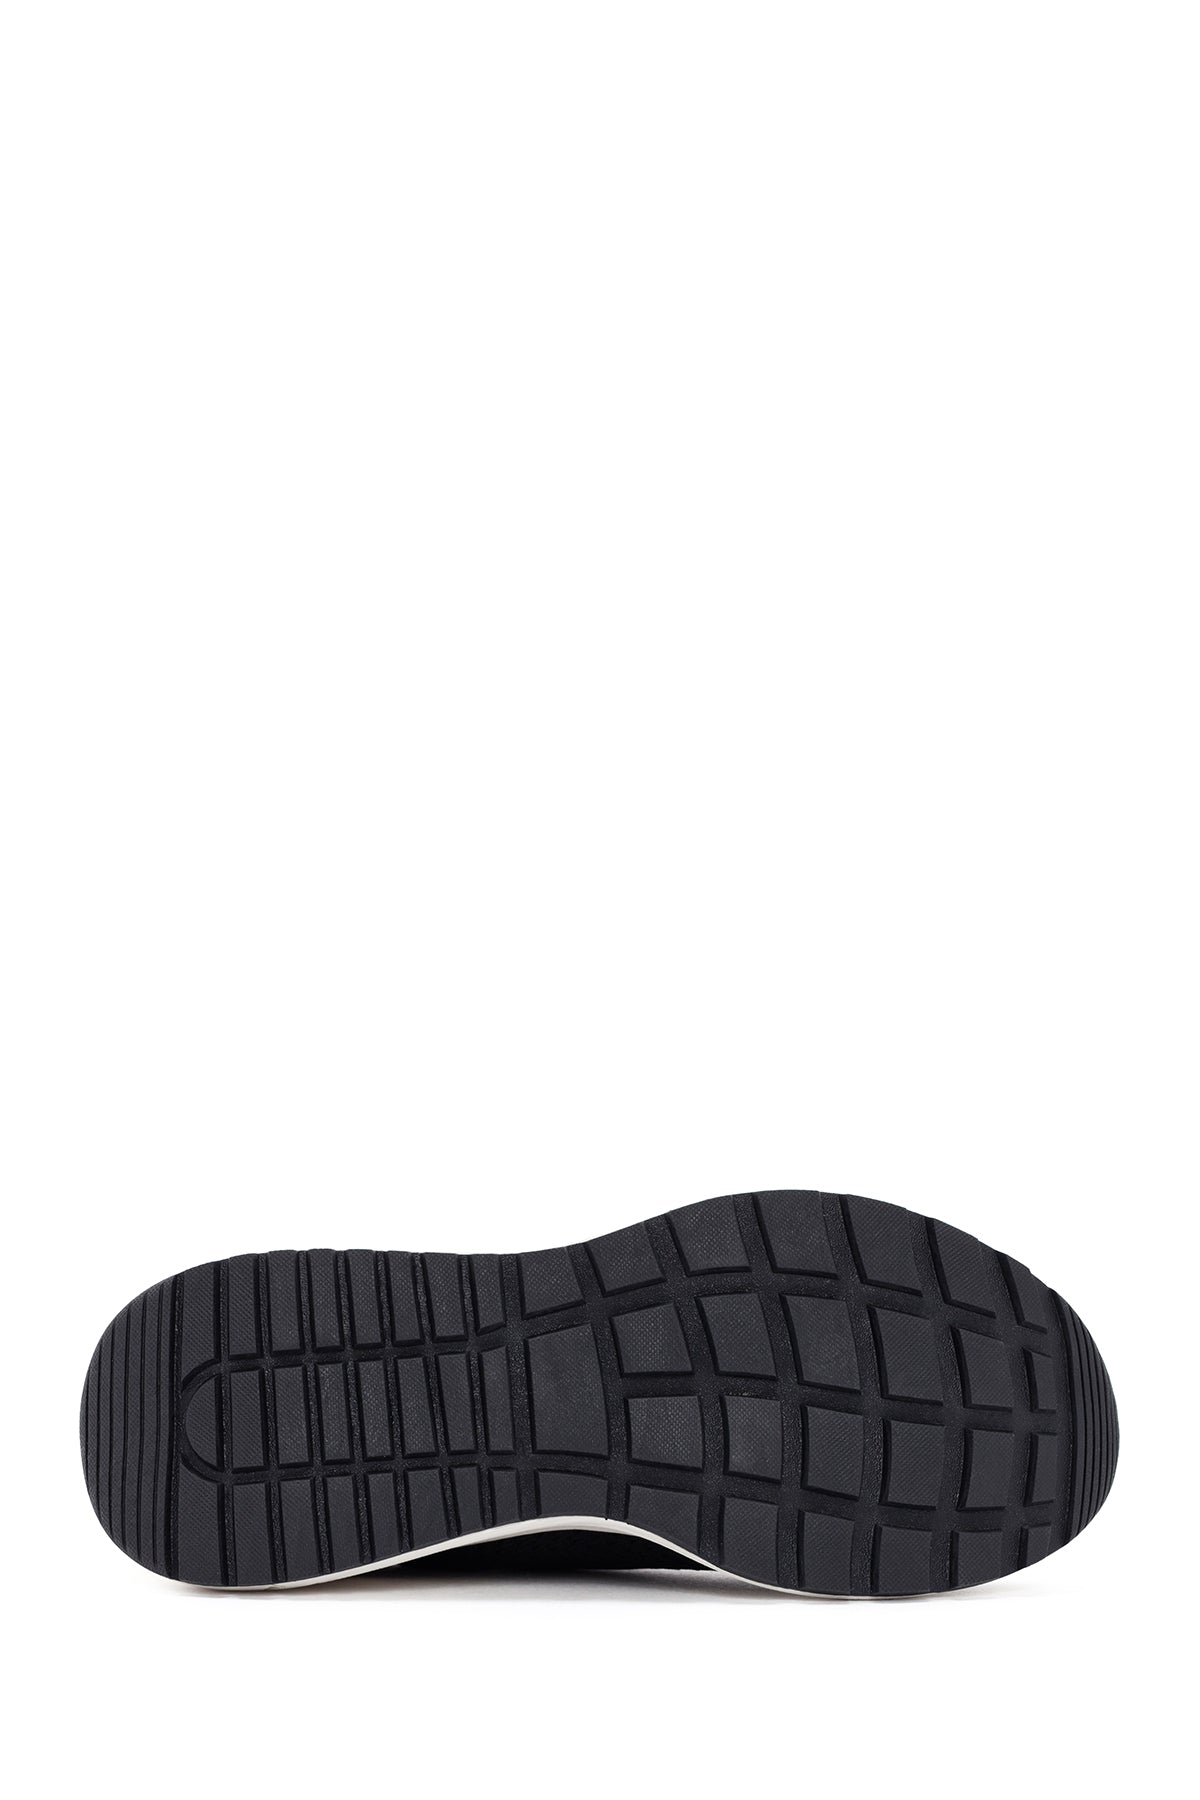 Skechers Erkek Siyah Kumaş Ayakkabı